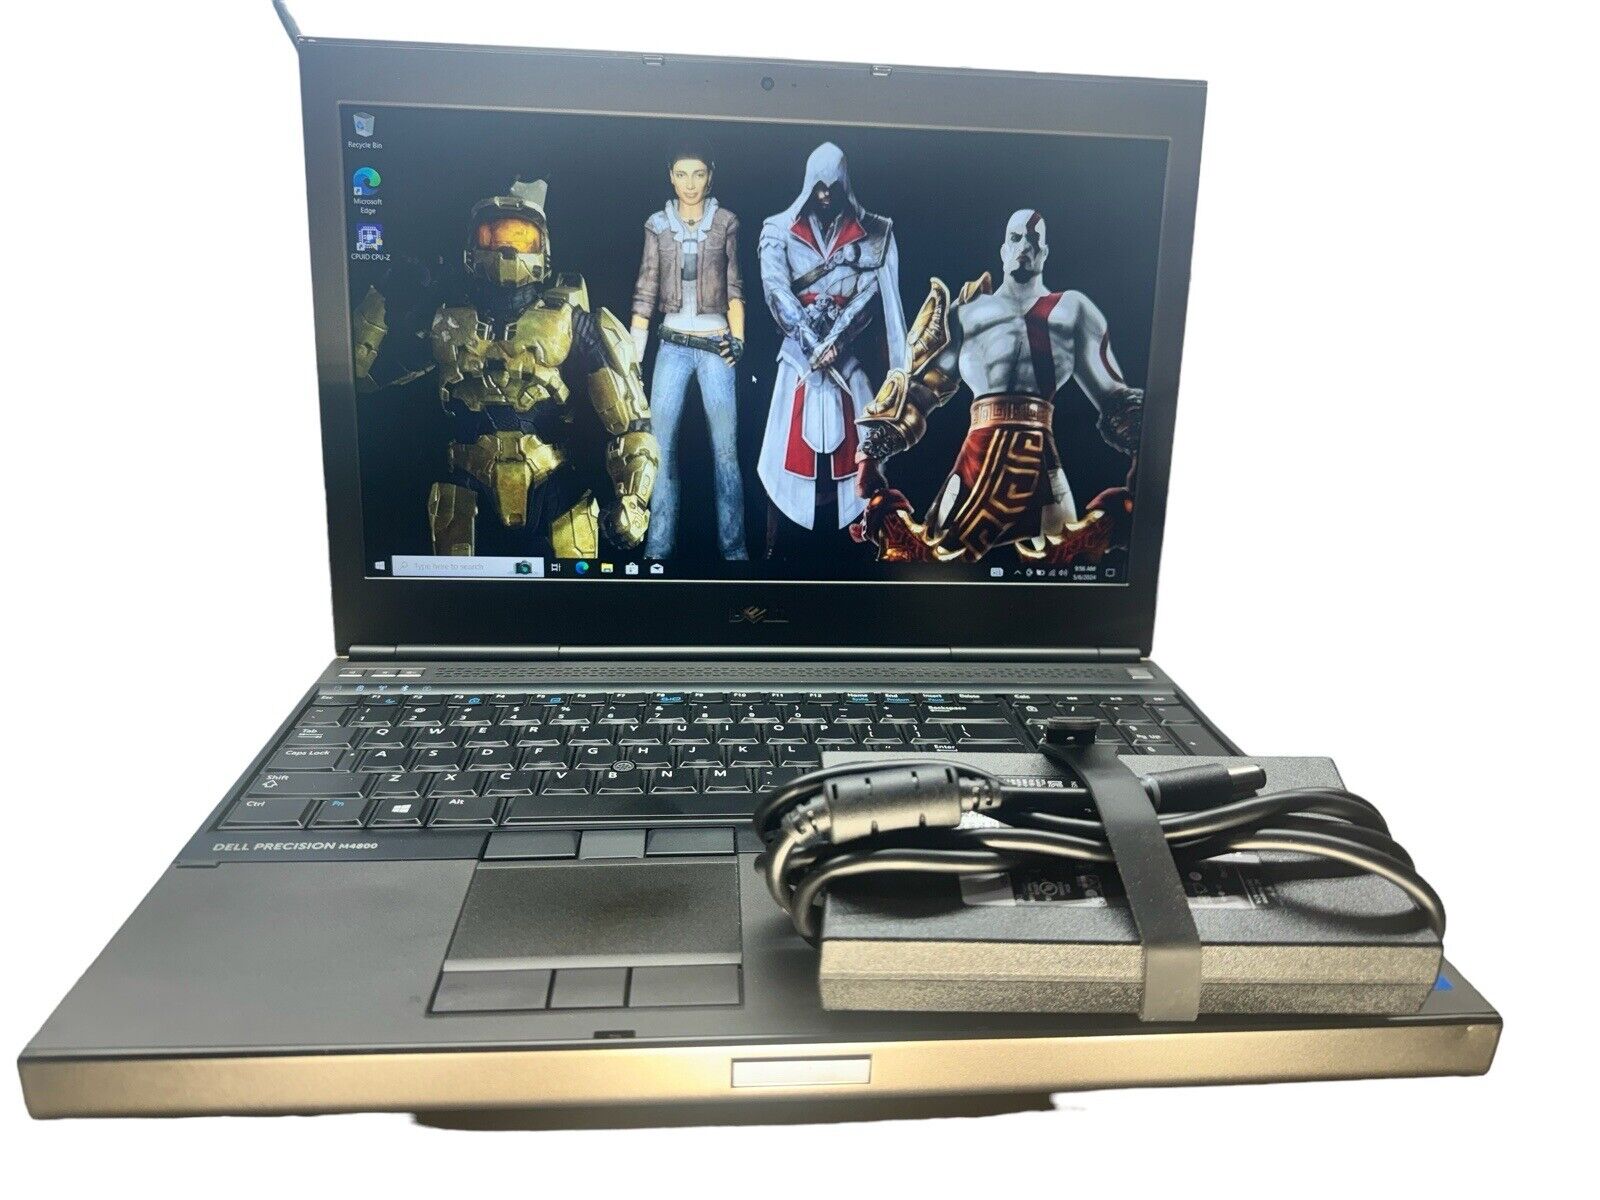 Dell Precisión Quad-Core Retro Gaming Laptop i7 16GB Ram 256GB SSD+500 HDDWin 10